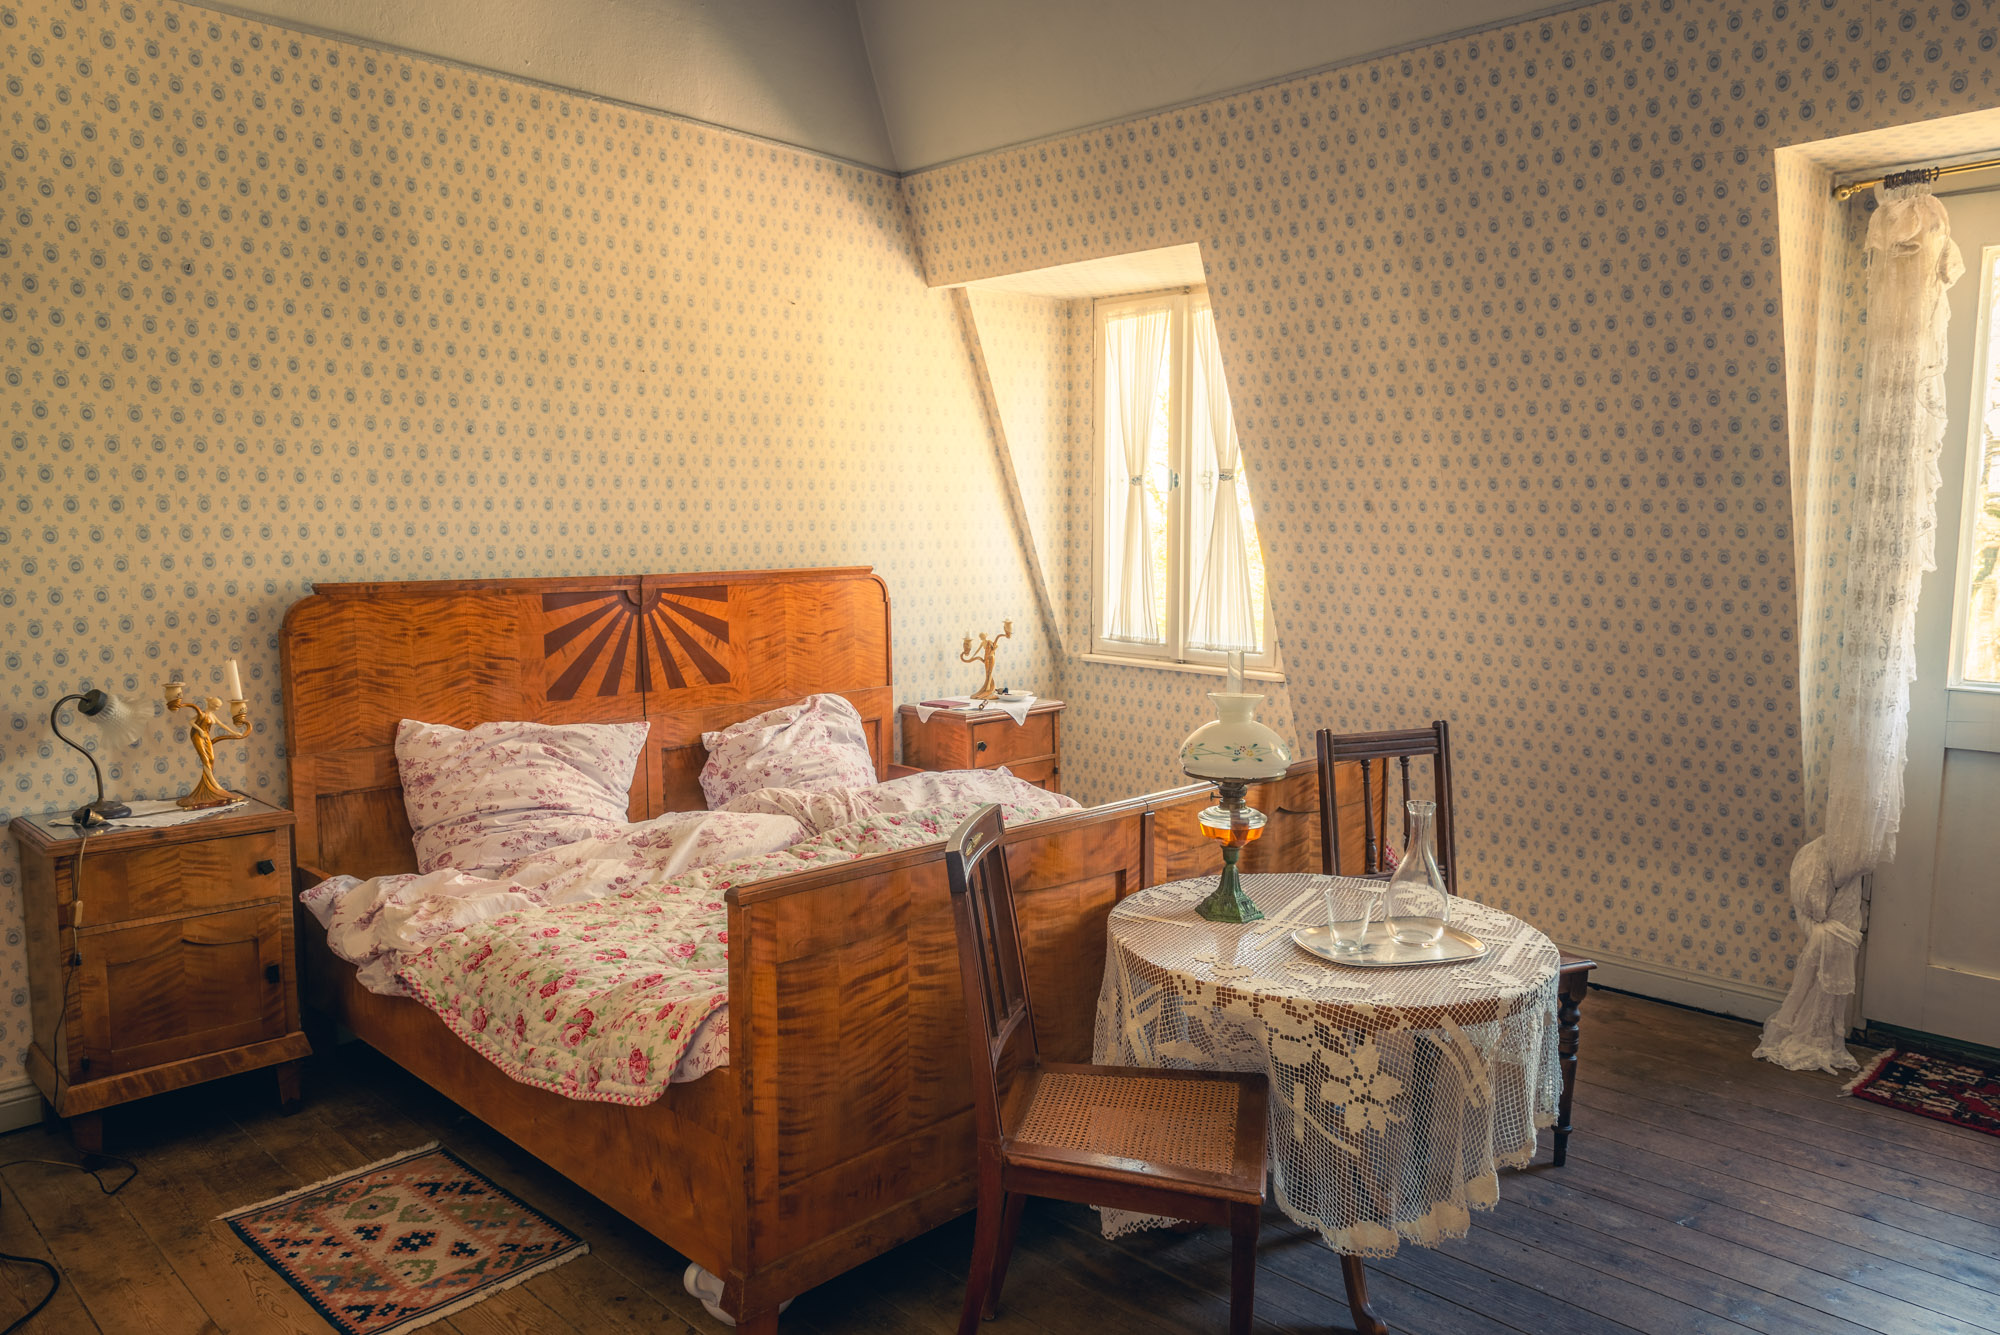 Kitschig eingerichtetes Doppelzimmer mit Blumenbettwäsche. Historische Hochzeitssuite.